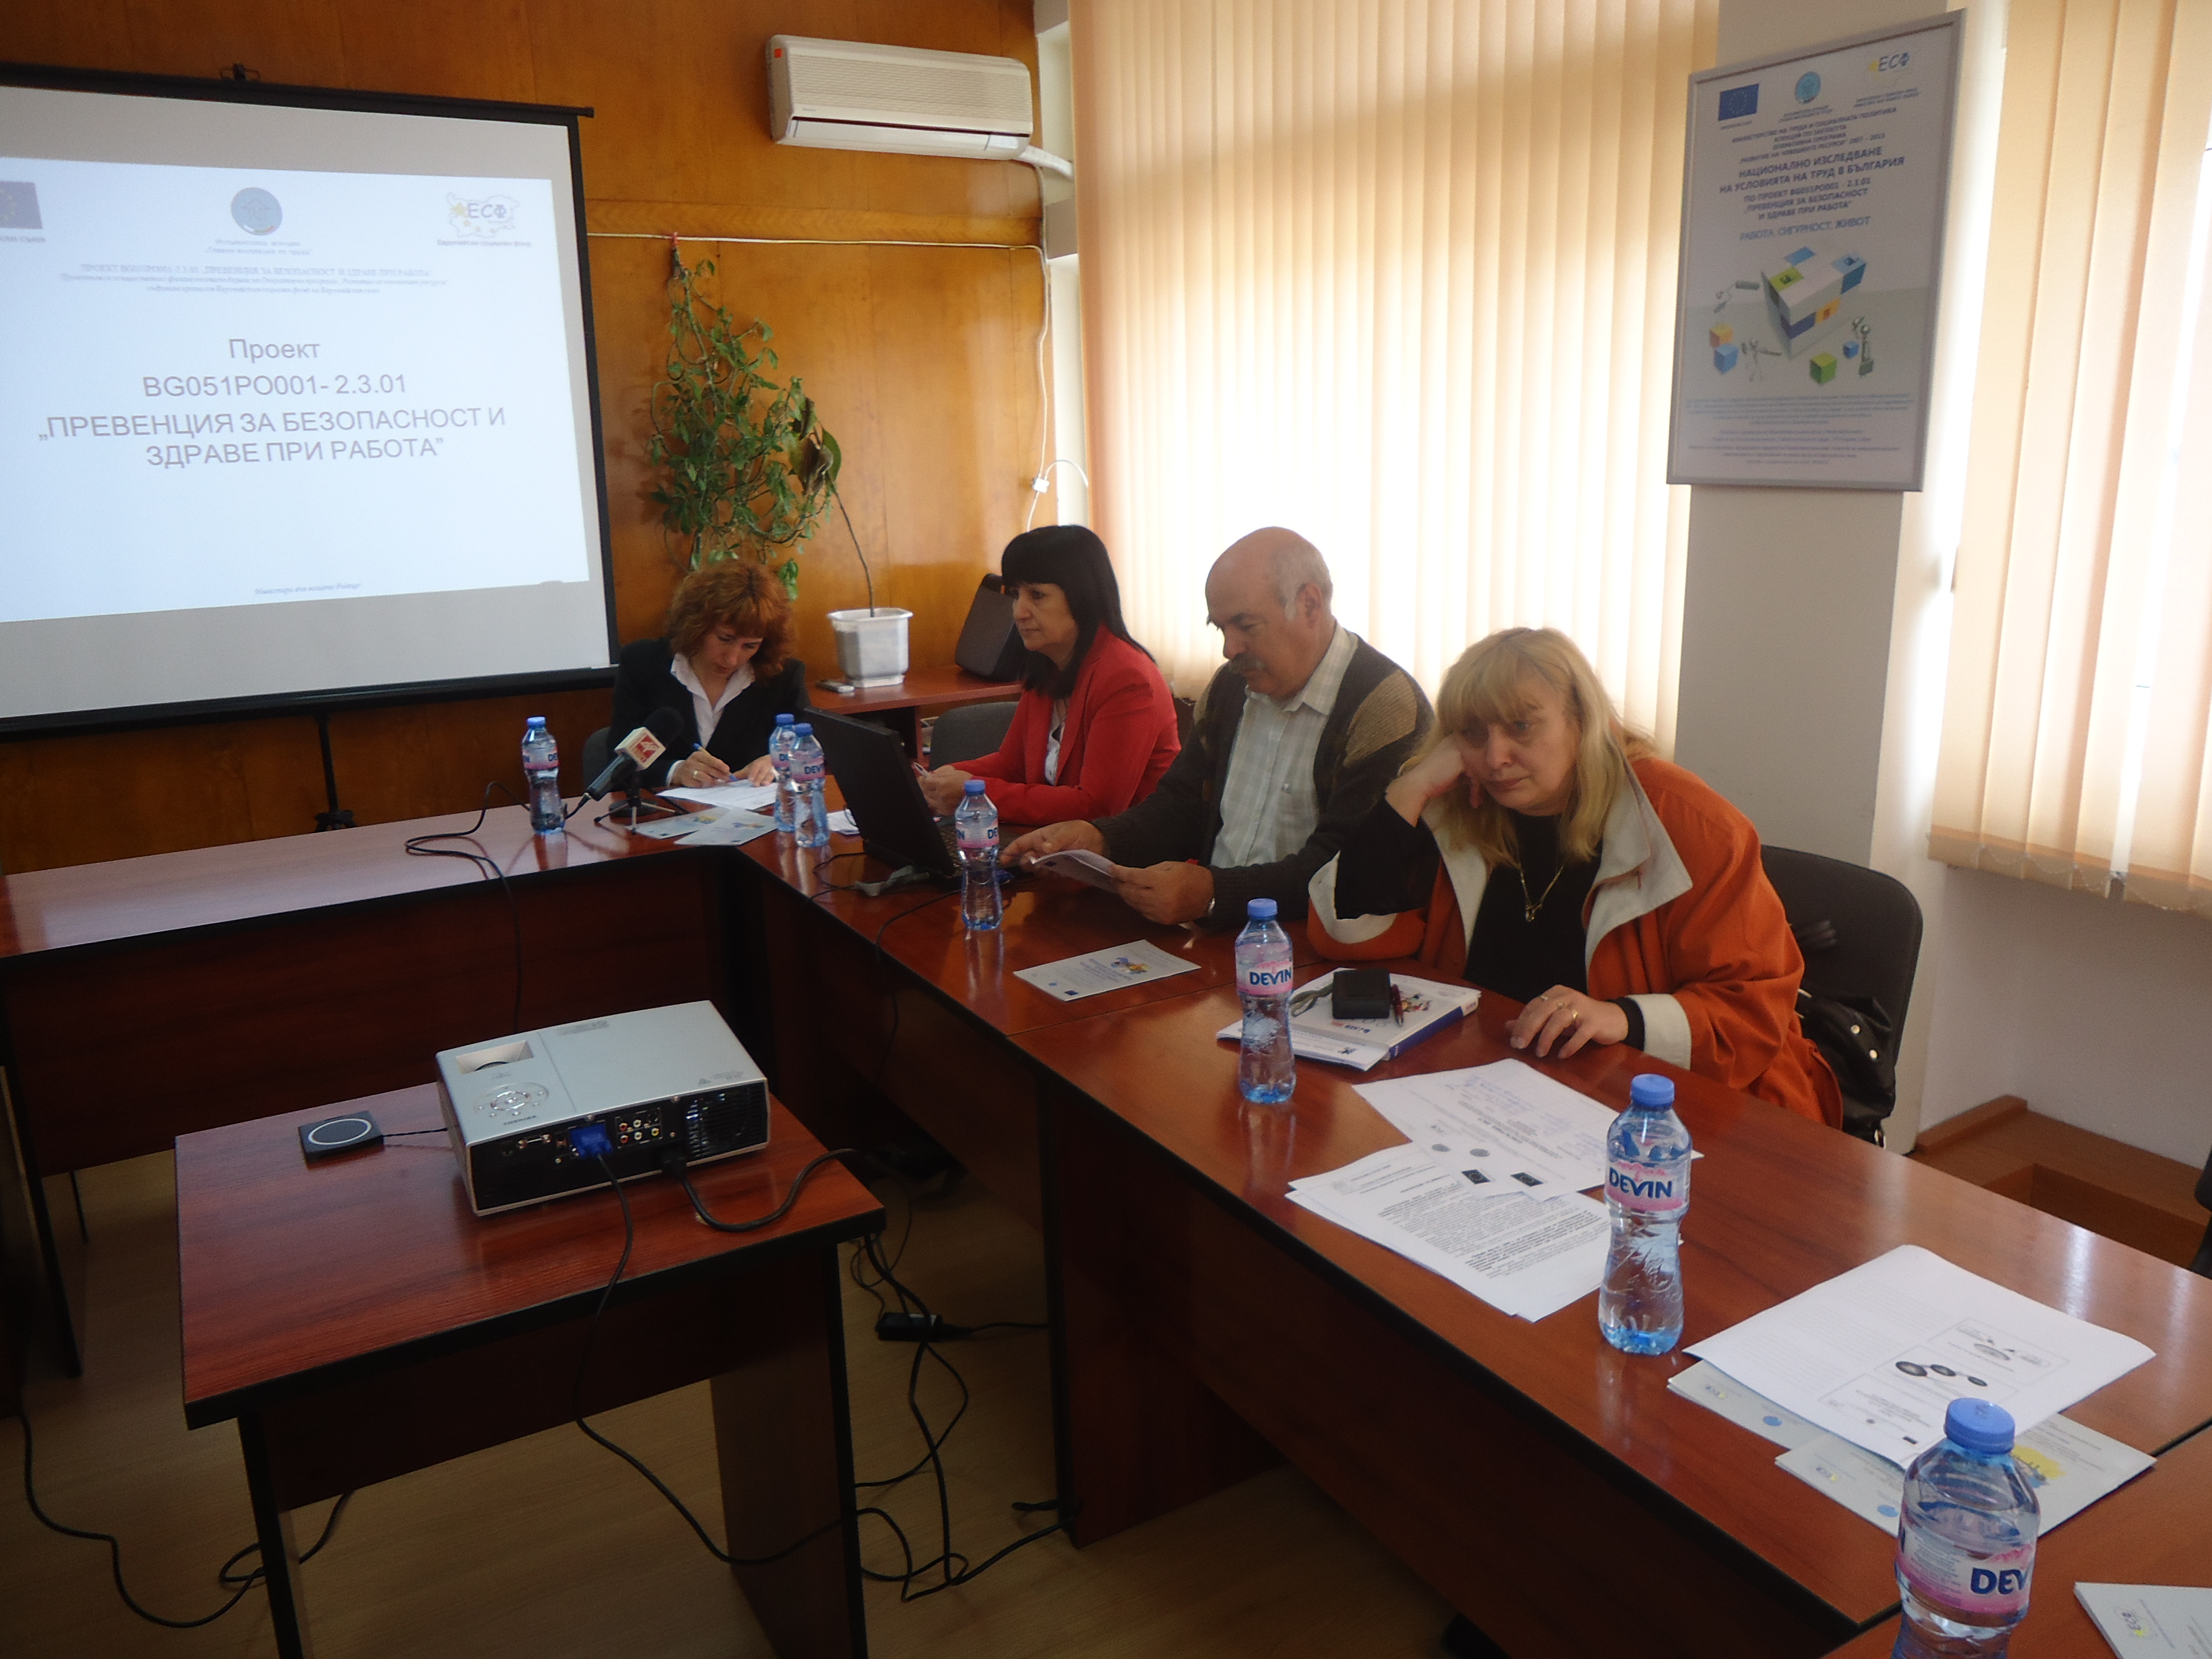 Днес в Благоевград се проведе пресконфенцерия по повод финализиране на проект Превенция за безопасност и здраве при работа